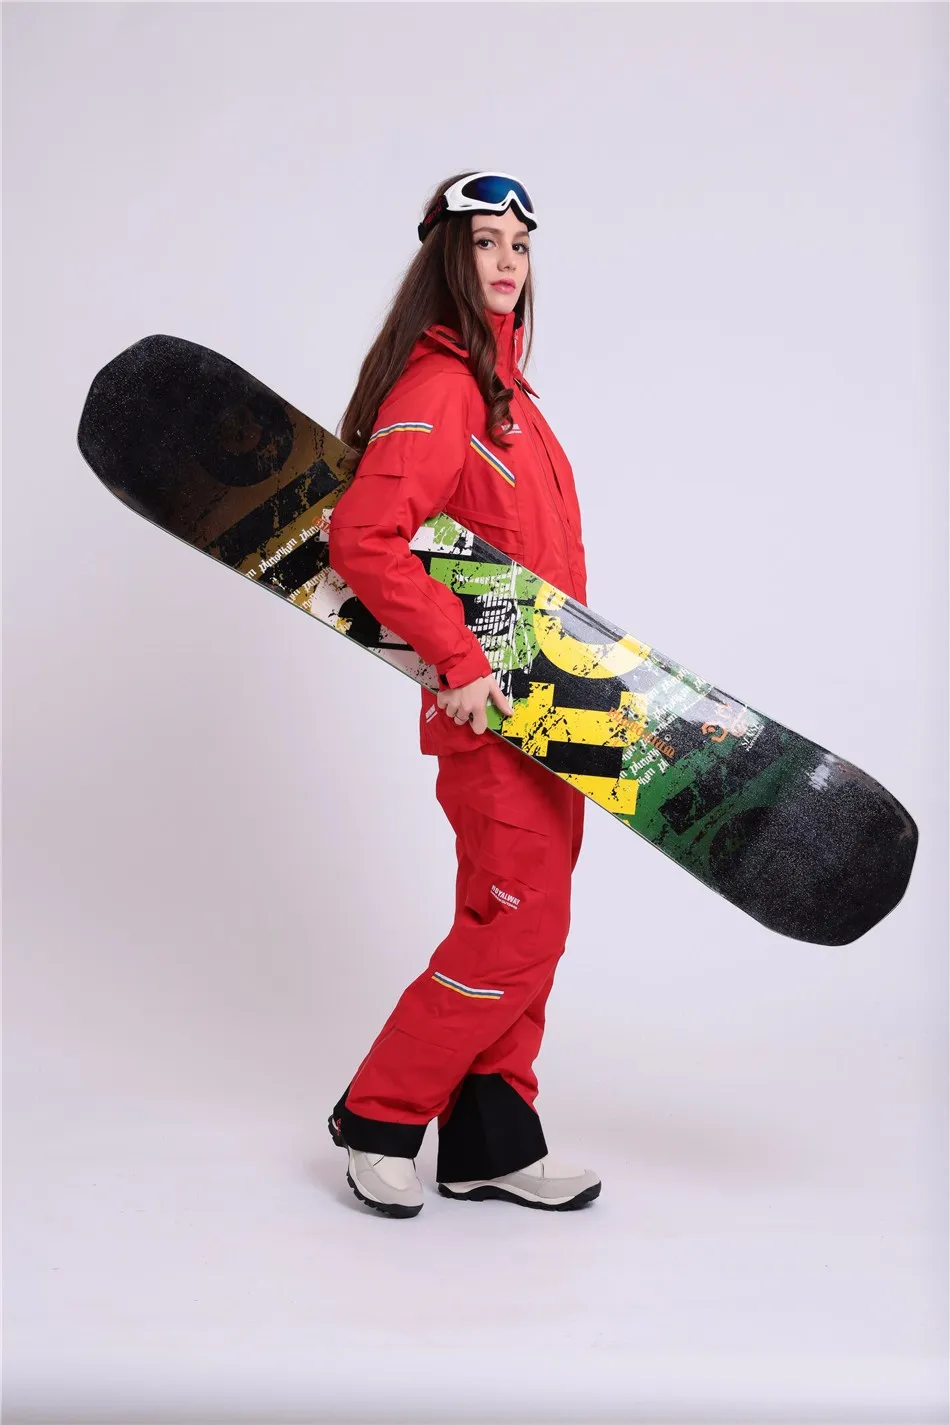 Royalway Для женщин Лыжный Спорт Лыжный Куртки Термальность спортивная одежда ветрозащитные Водонепроницаемый куртка сноуборд recco GPS куртка# RFSL4504G